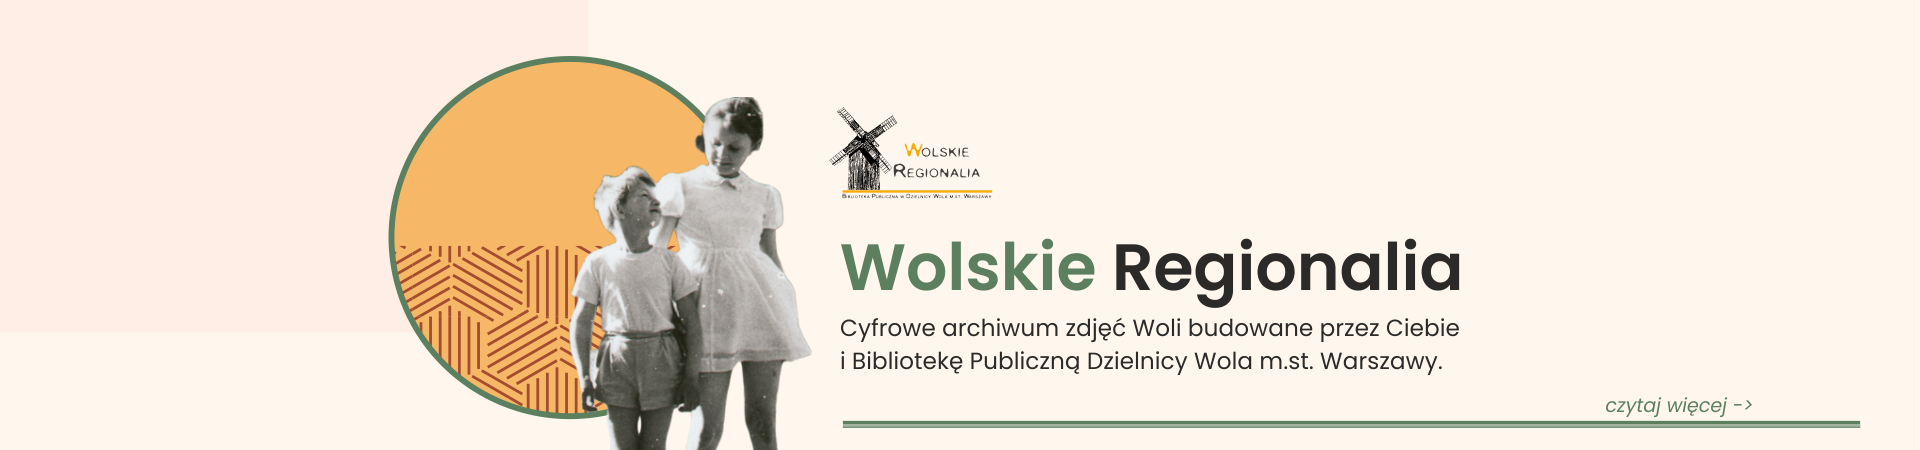 Z lewej strony zdjęcia widać małego chłopca i dziewczynkę na tle żółtego koła ze wzorem. Po prawej stronie widnieje logo Wolskich Regionaliów wraz z napisem Cyfrowe archiwum zdjęć Woli budowane przez Ciebie i Bibliotekę Publiczną Dzielnicy Wola miasta stołecznego Warszawy.